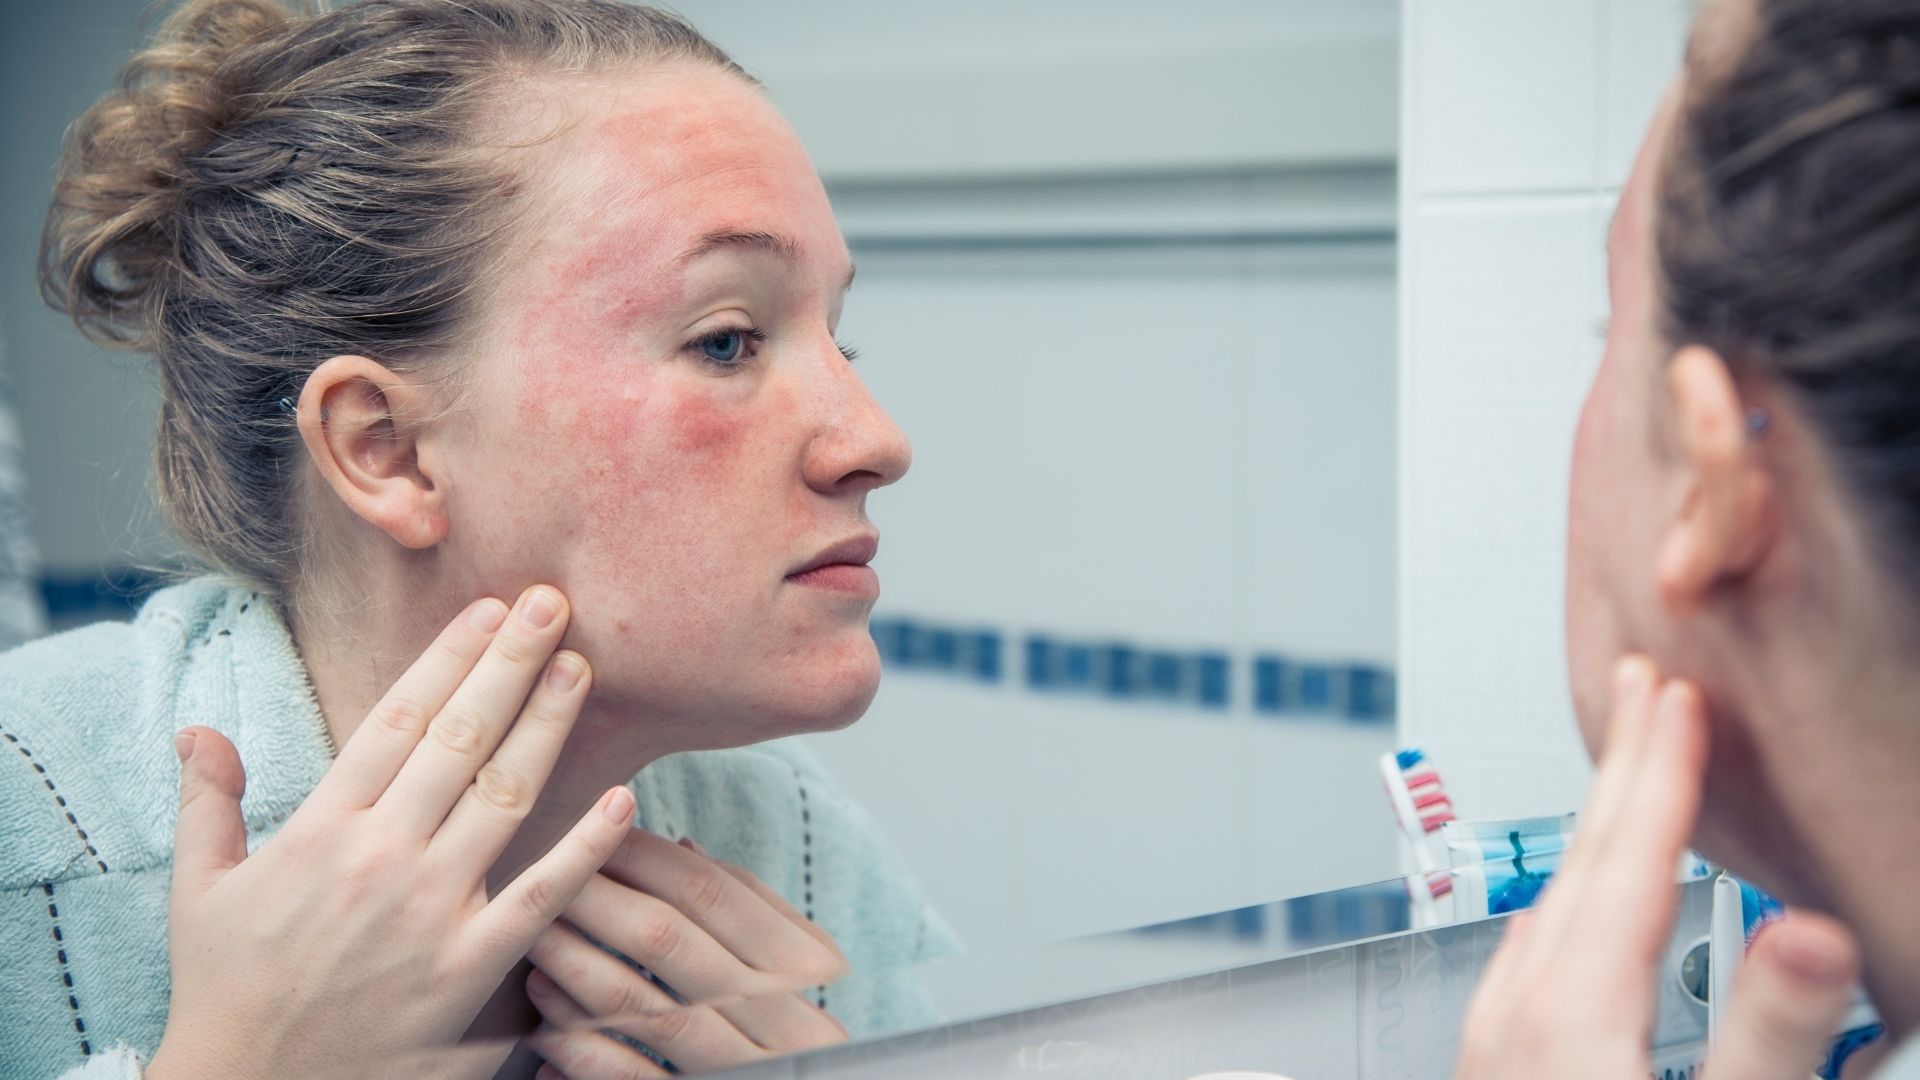 El acné, la rosácea, la psoriasis y el incremento de vitiligo son algunas enfermedades de la piel que pueden ser producto de la ansiedad (Getty)